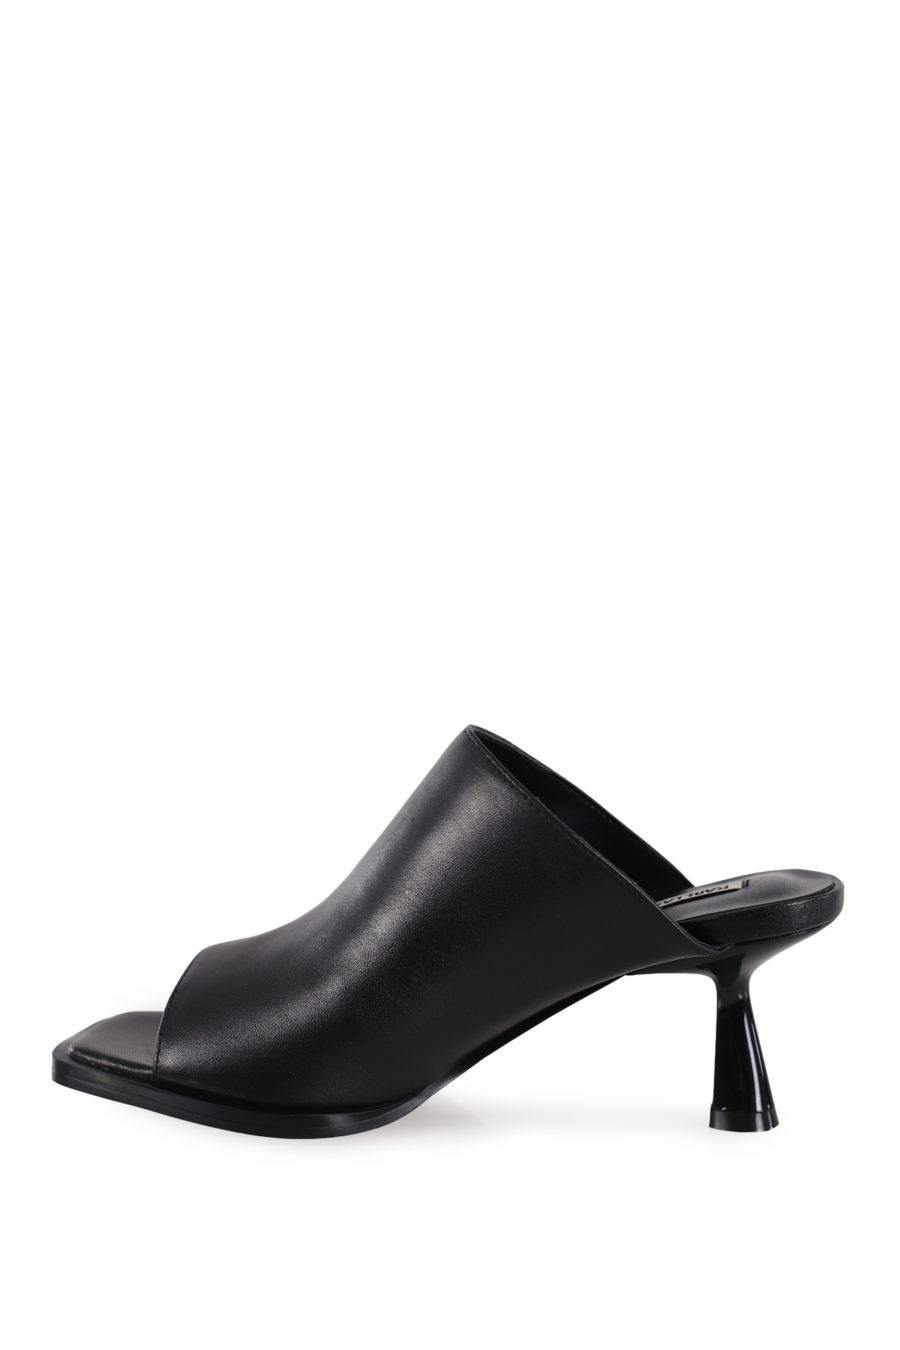 Black mule sandals with heel - IMG 8676